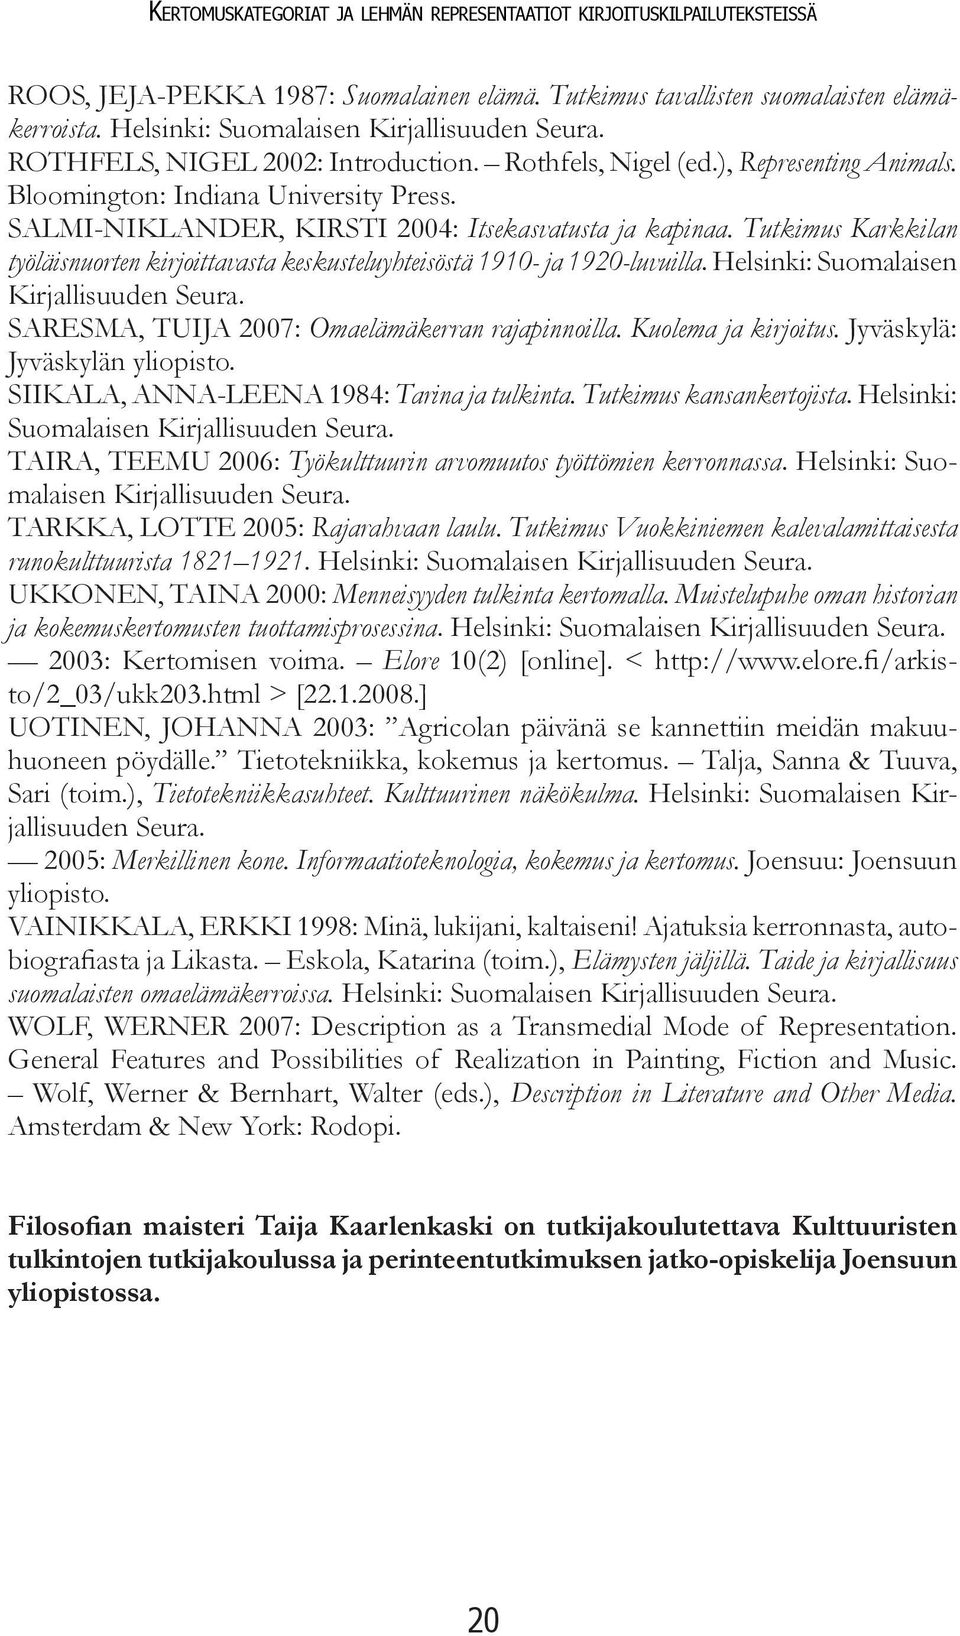 SALMI-NIKLANDER, KIRSTI 2004: Itsekasvatusta ja kapinaa. Tutkimus Karkkilan työläisnuorten kirjoittavasta keskusteluyhteisöstä 1910- ja 1920-luvuilla. Helsinki: Suomalaisen Kirjallisuuden Seura.